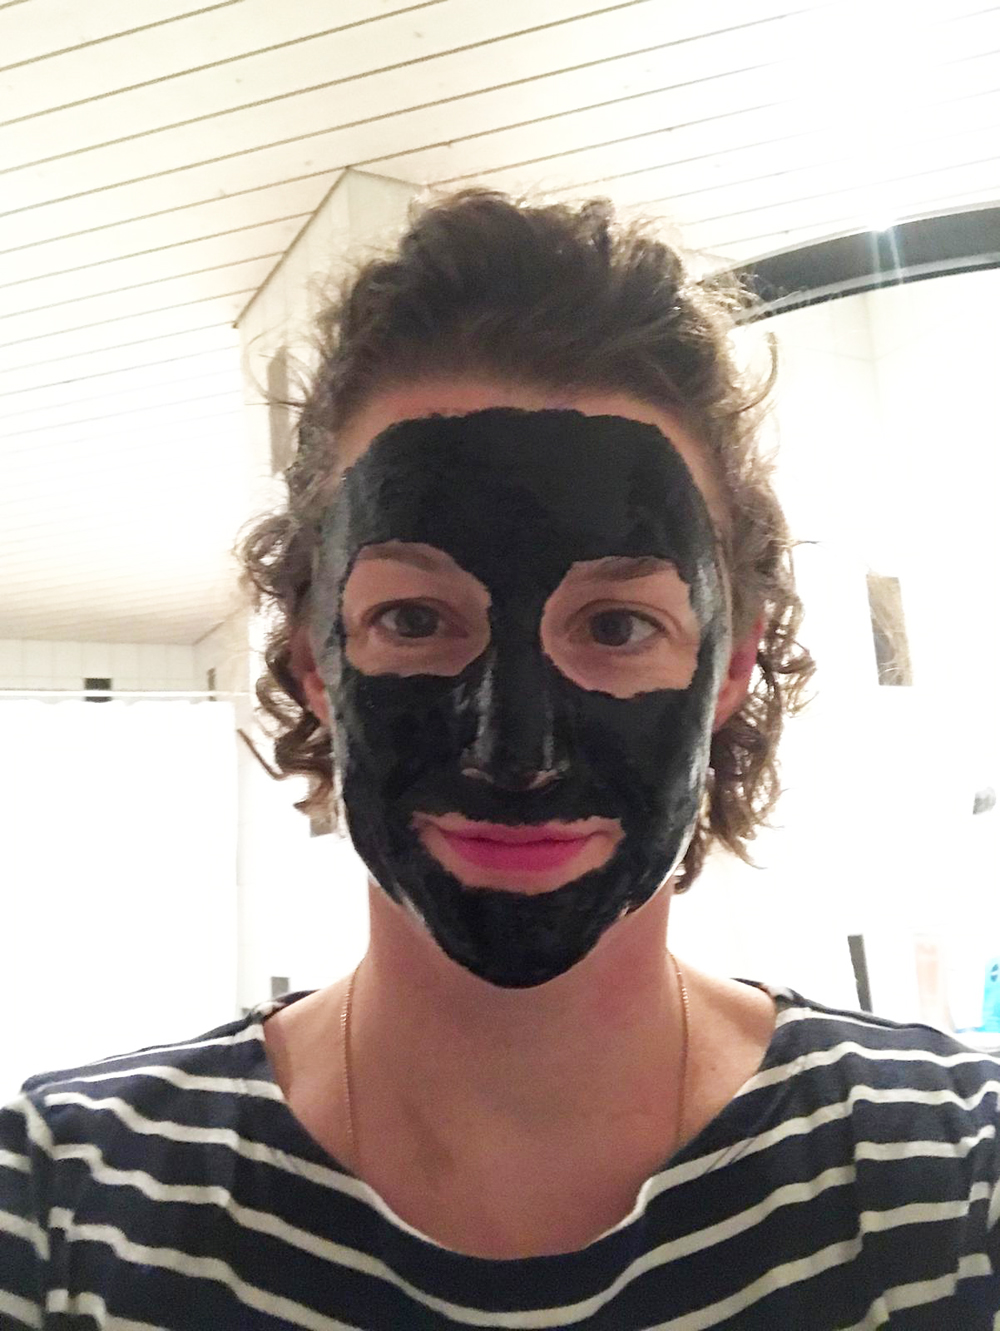 Gastbloggerin Florina ging in die Maske - und erzählt auf sonrisa von ihren Erfahrungen mit den neusten Gesichtsmasken auf dem Markt!